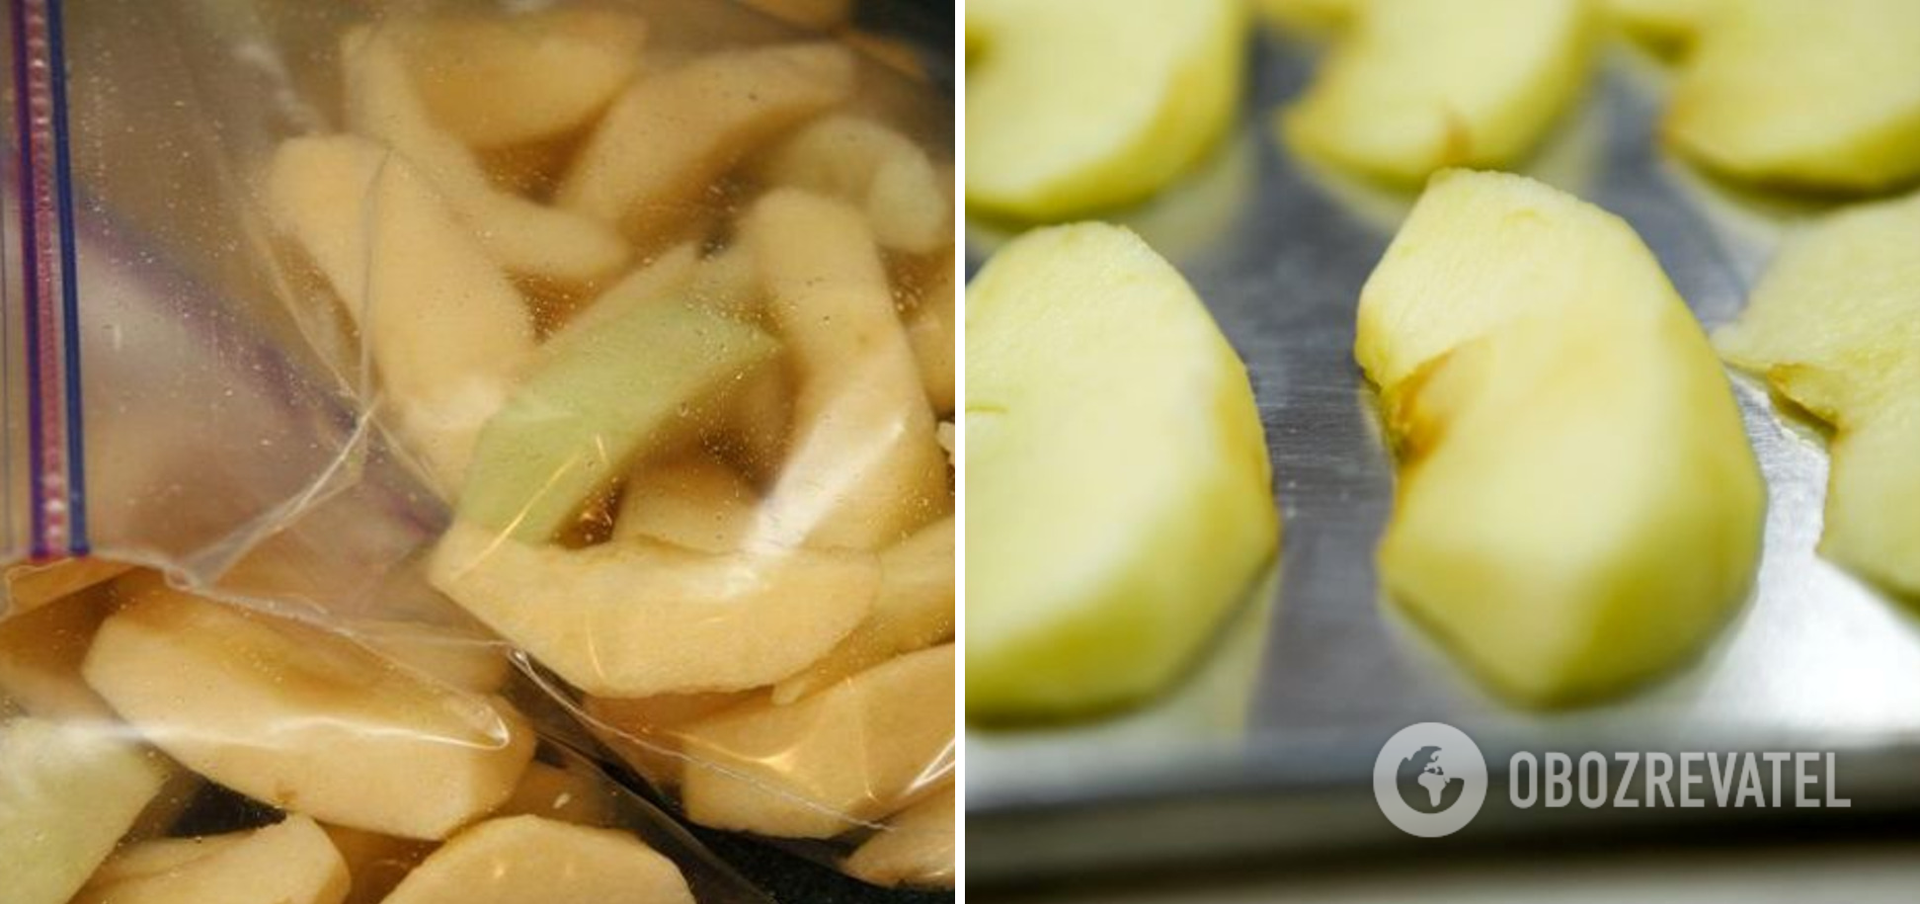 Как заморозить яблоки, чтобы не чернели